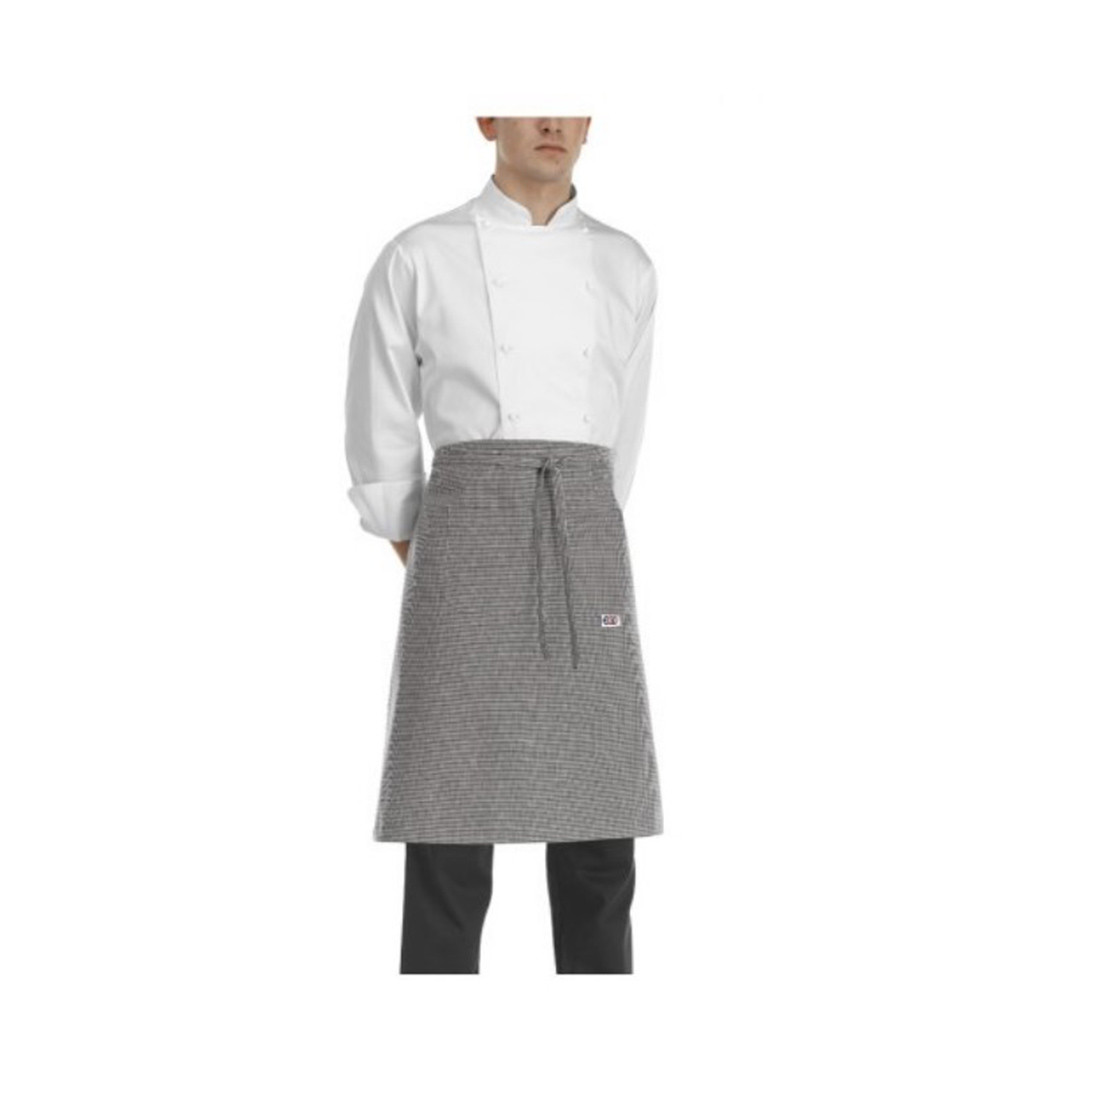 Waist apron - Safetywear